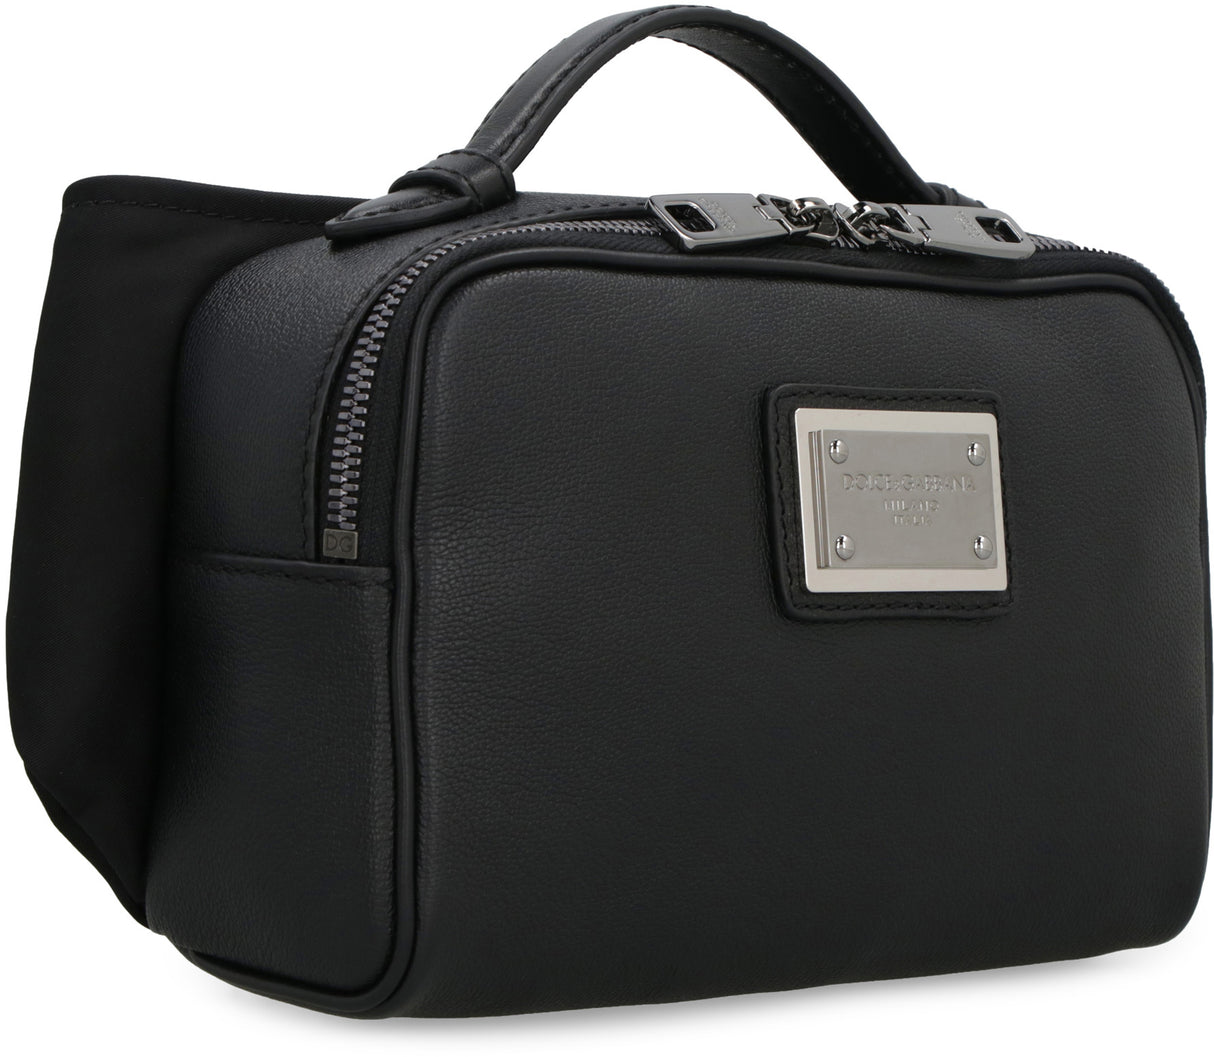 حقيبة جلدية سوداء بحزام وشعار للرجال - مجموعة FW23